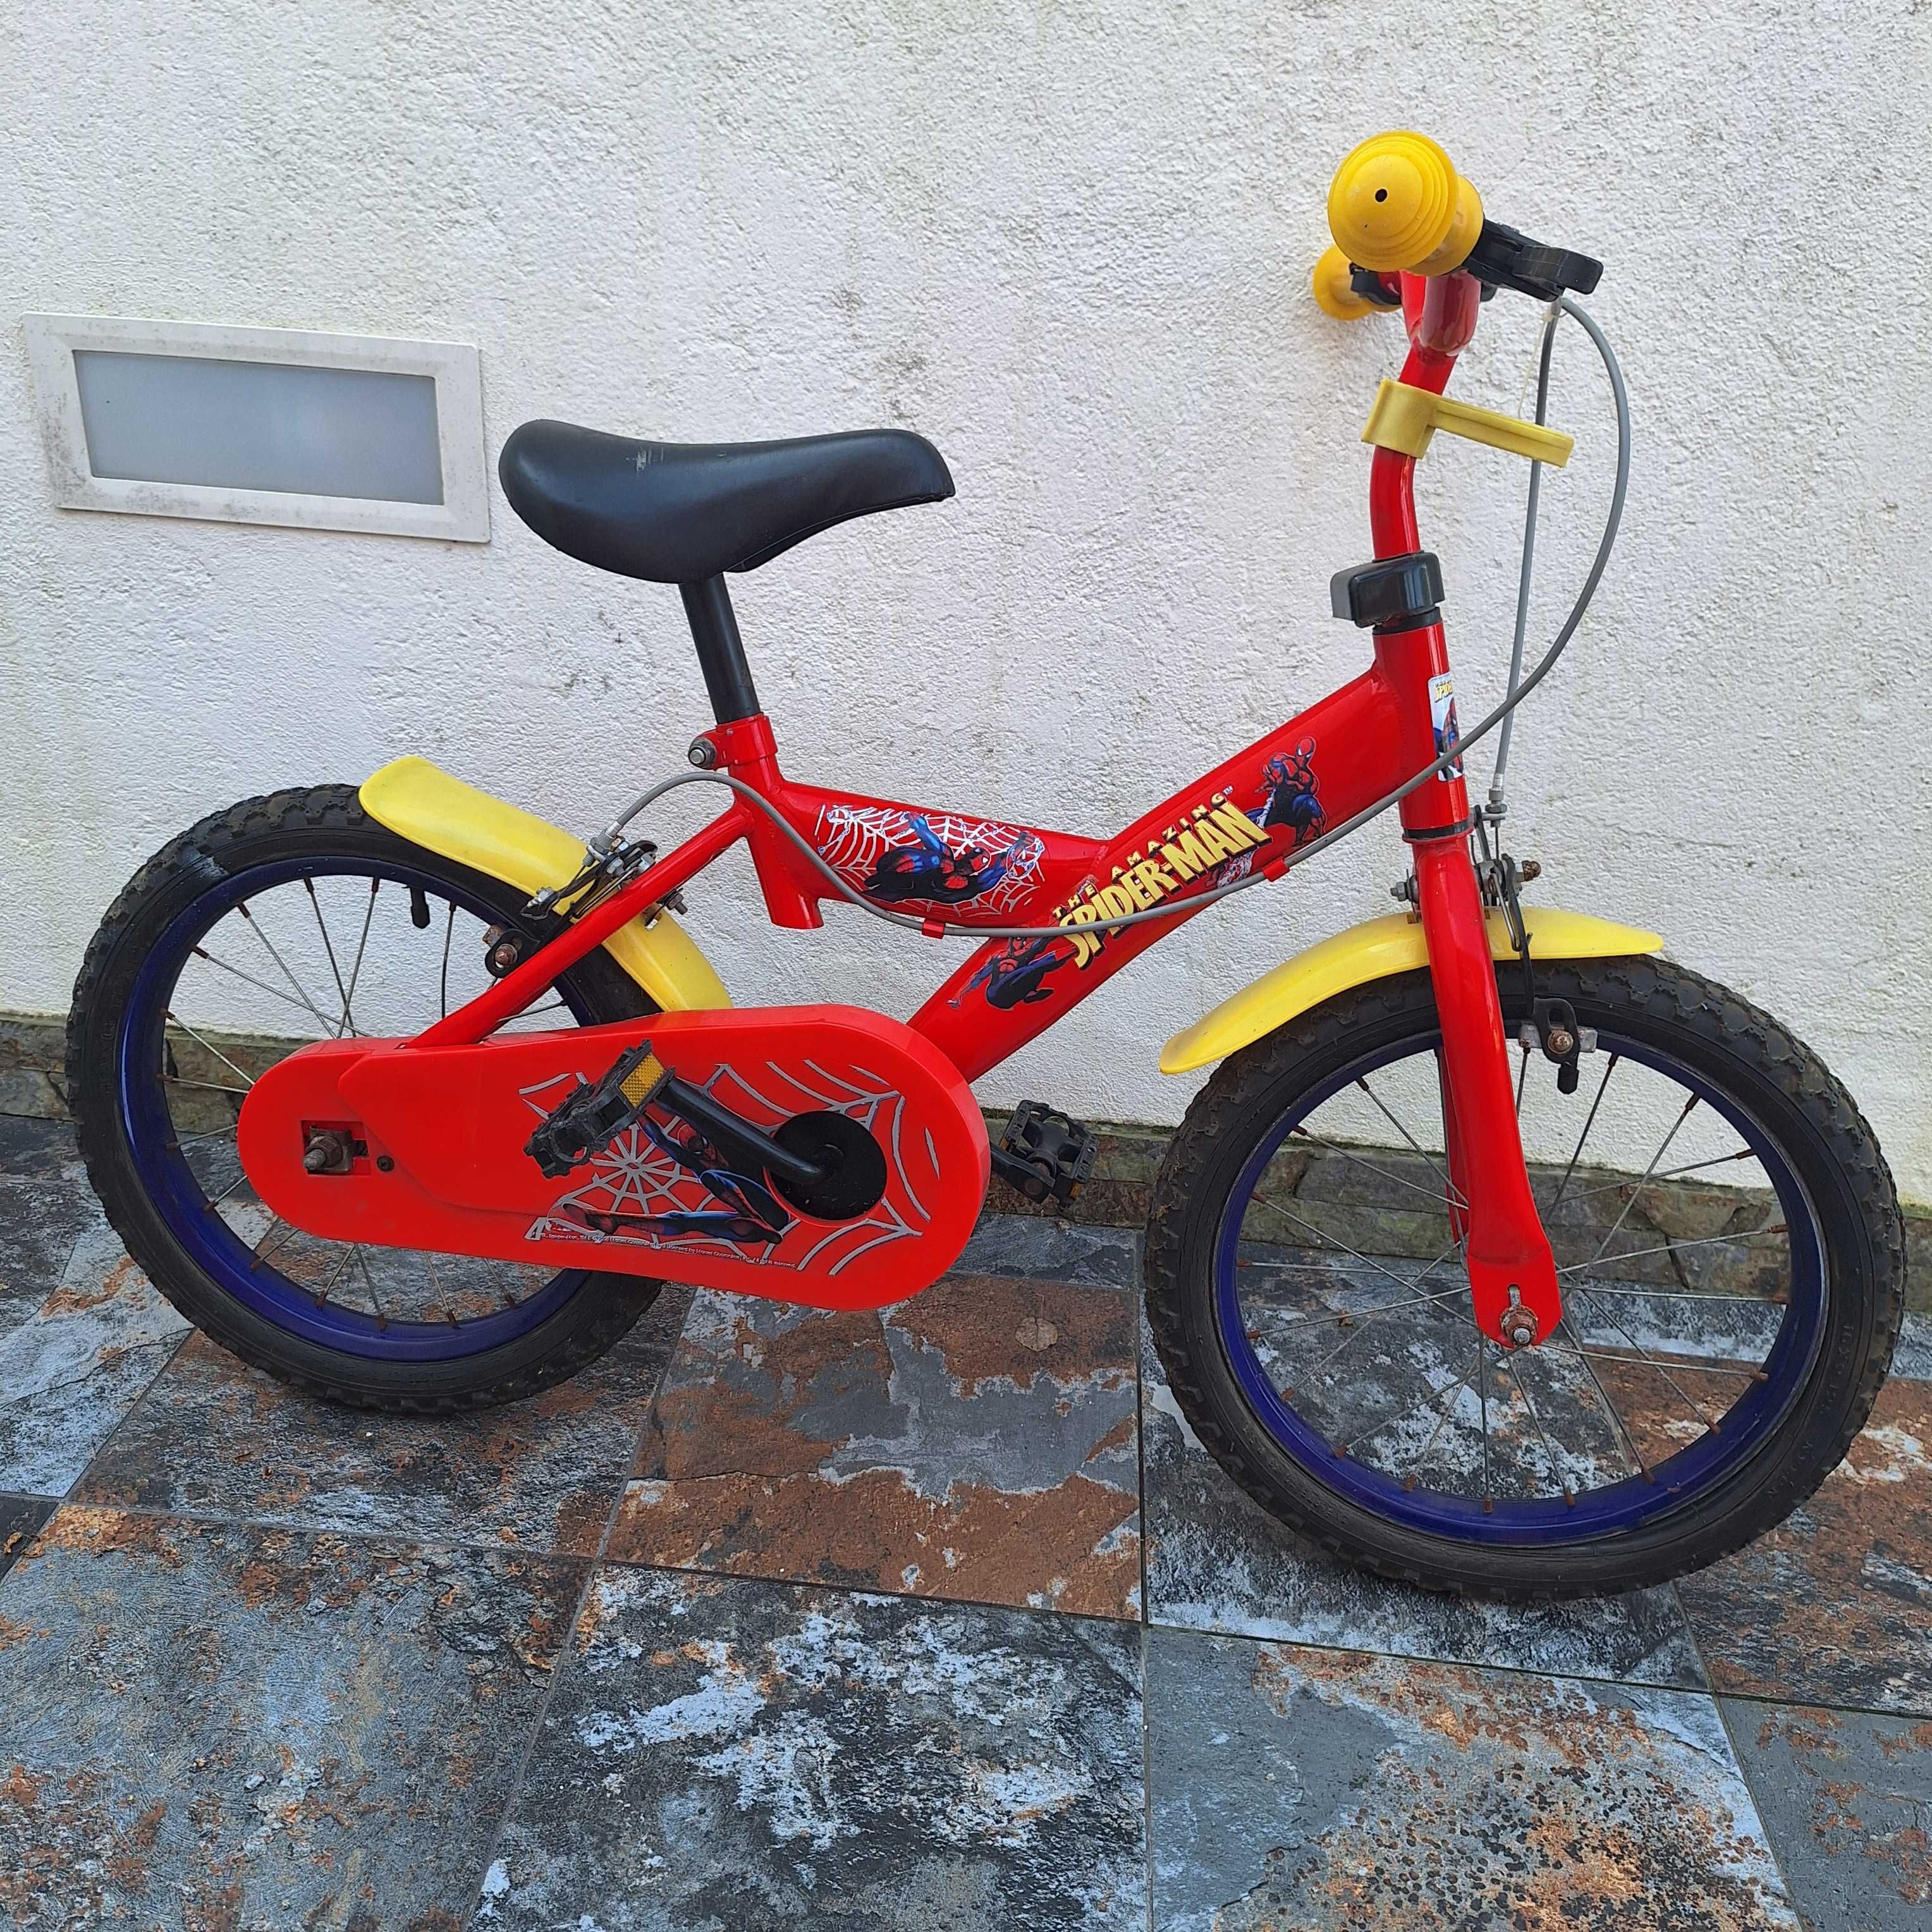 Kart a pedais e bicicleta de criança